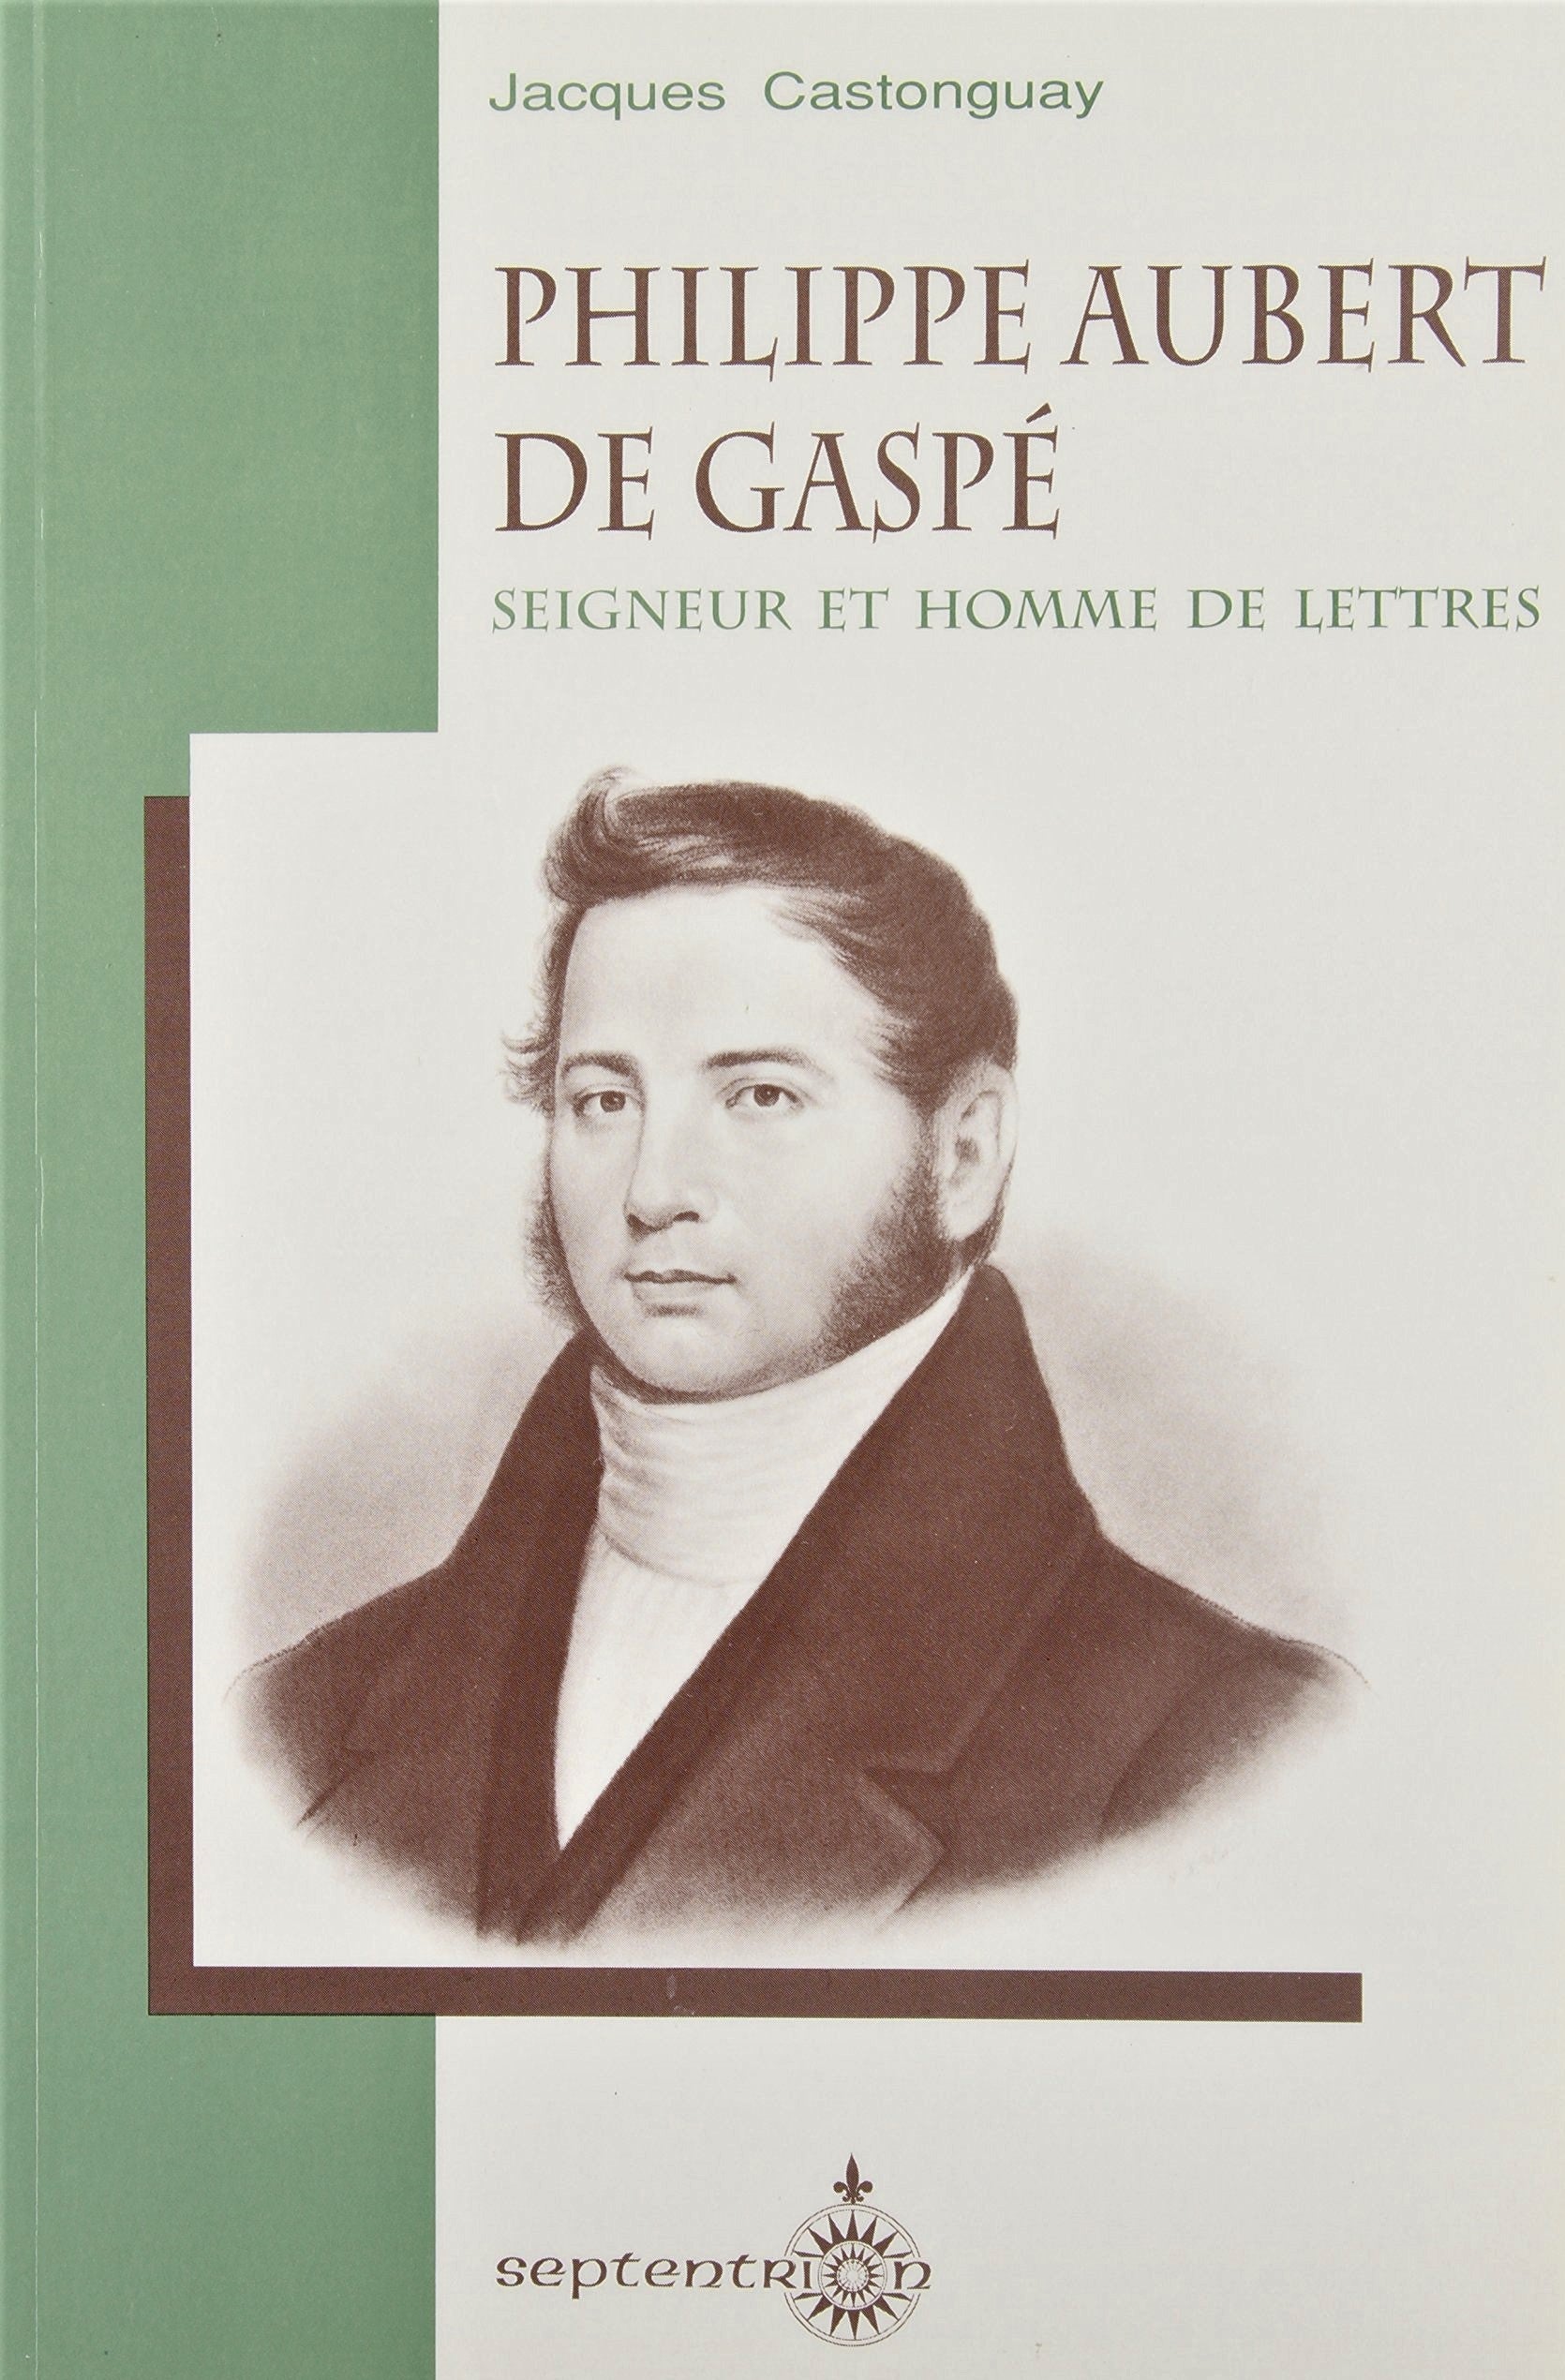 Livre ISBN 292111450X Philippe Aubert de Gaspé : Seigneur et homme de lettres (Jacques Castonguay)